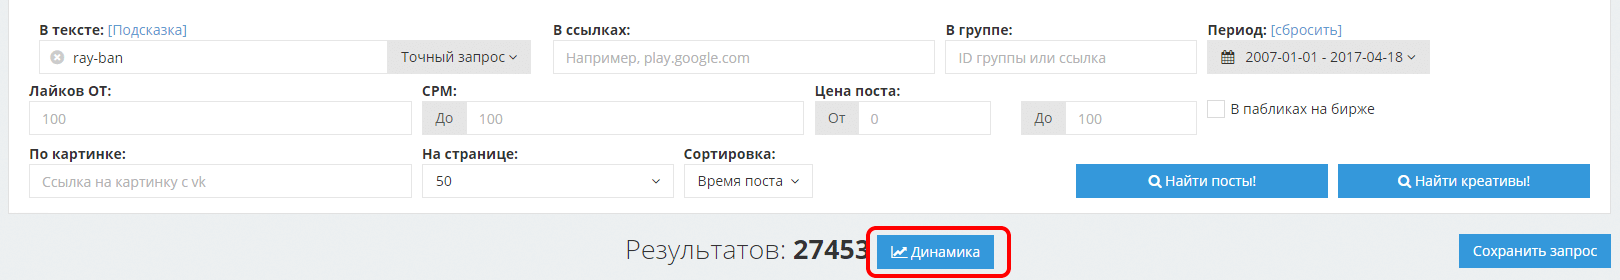 Оффер для рекламы в сообществах Вконтакте